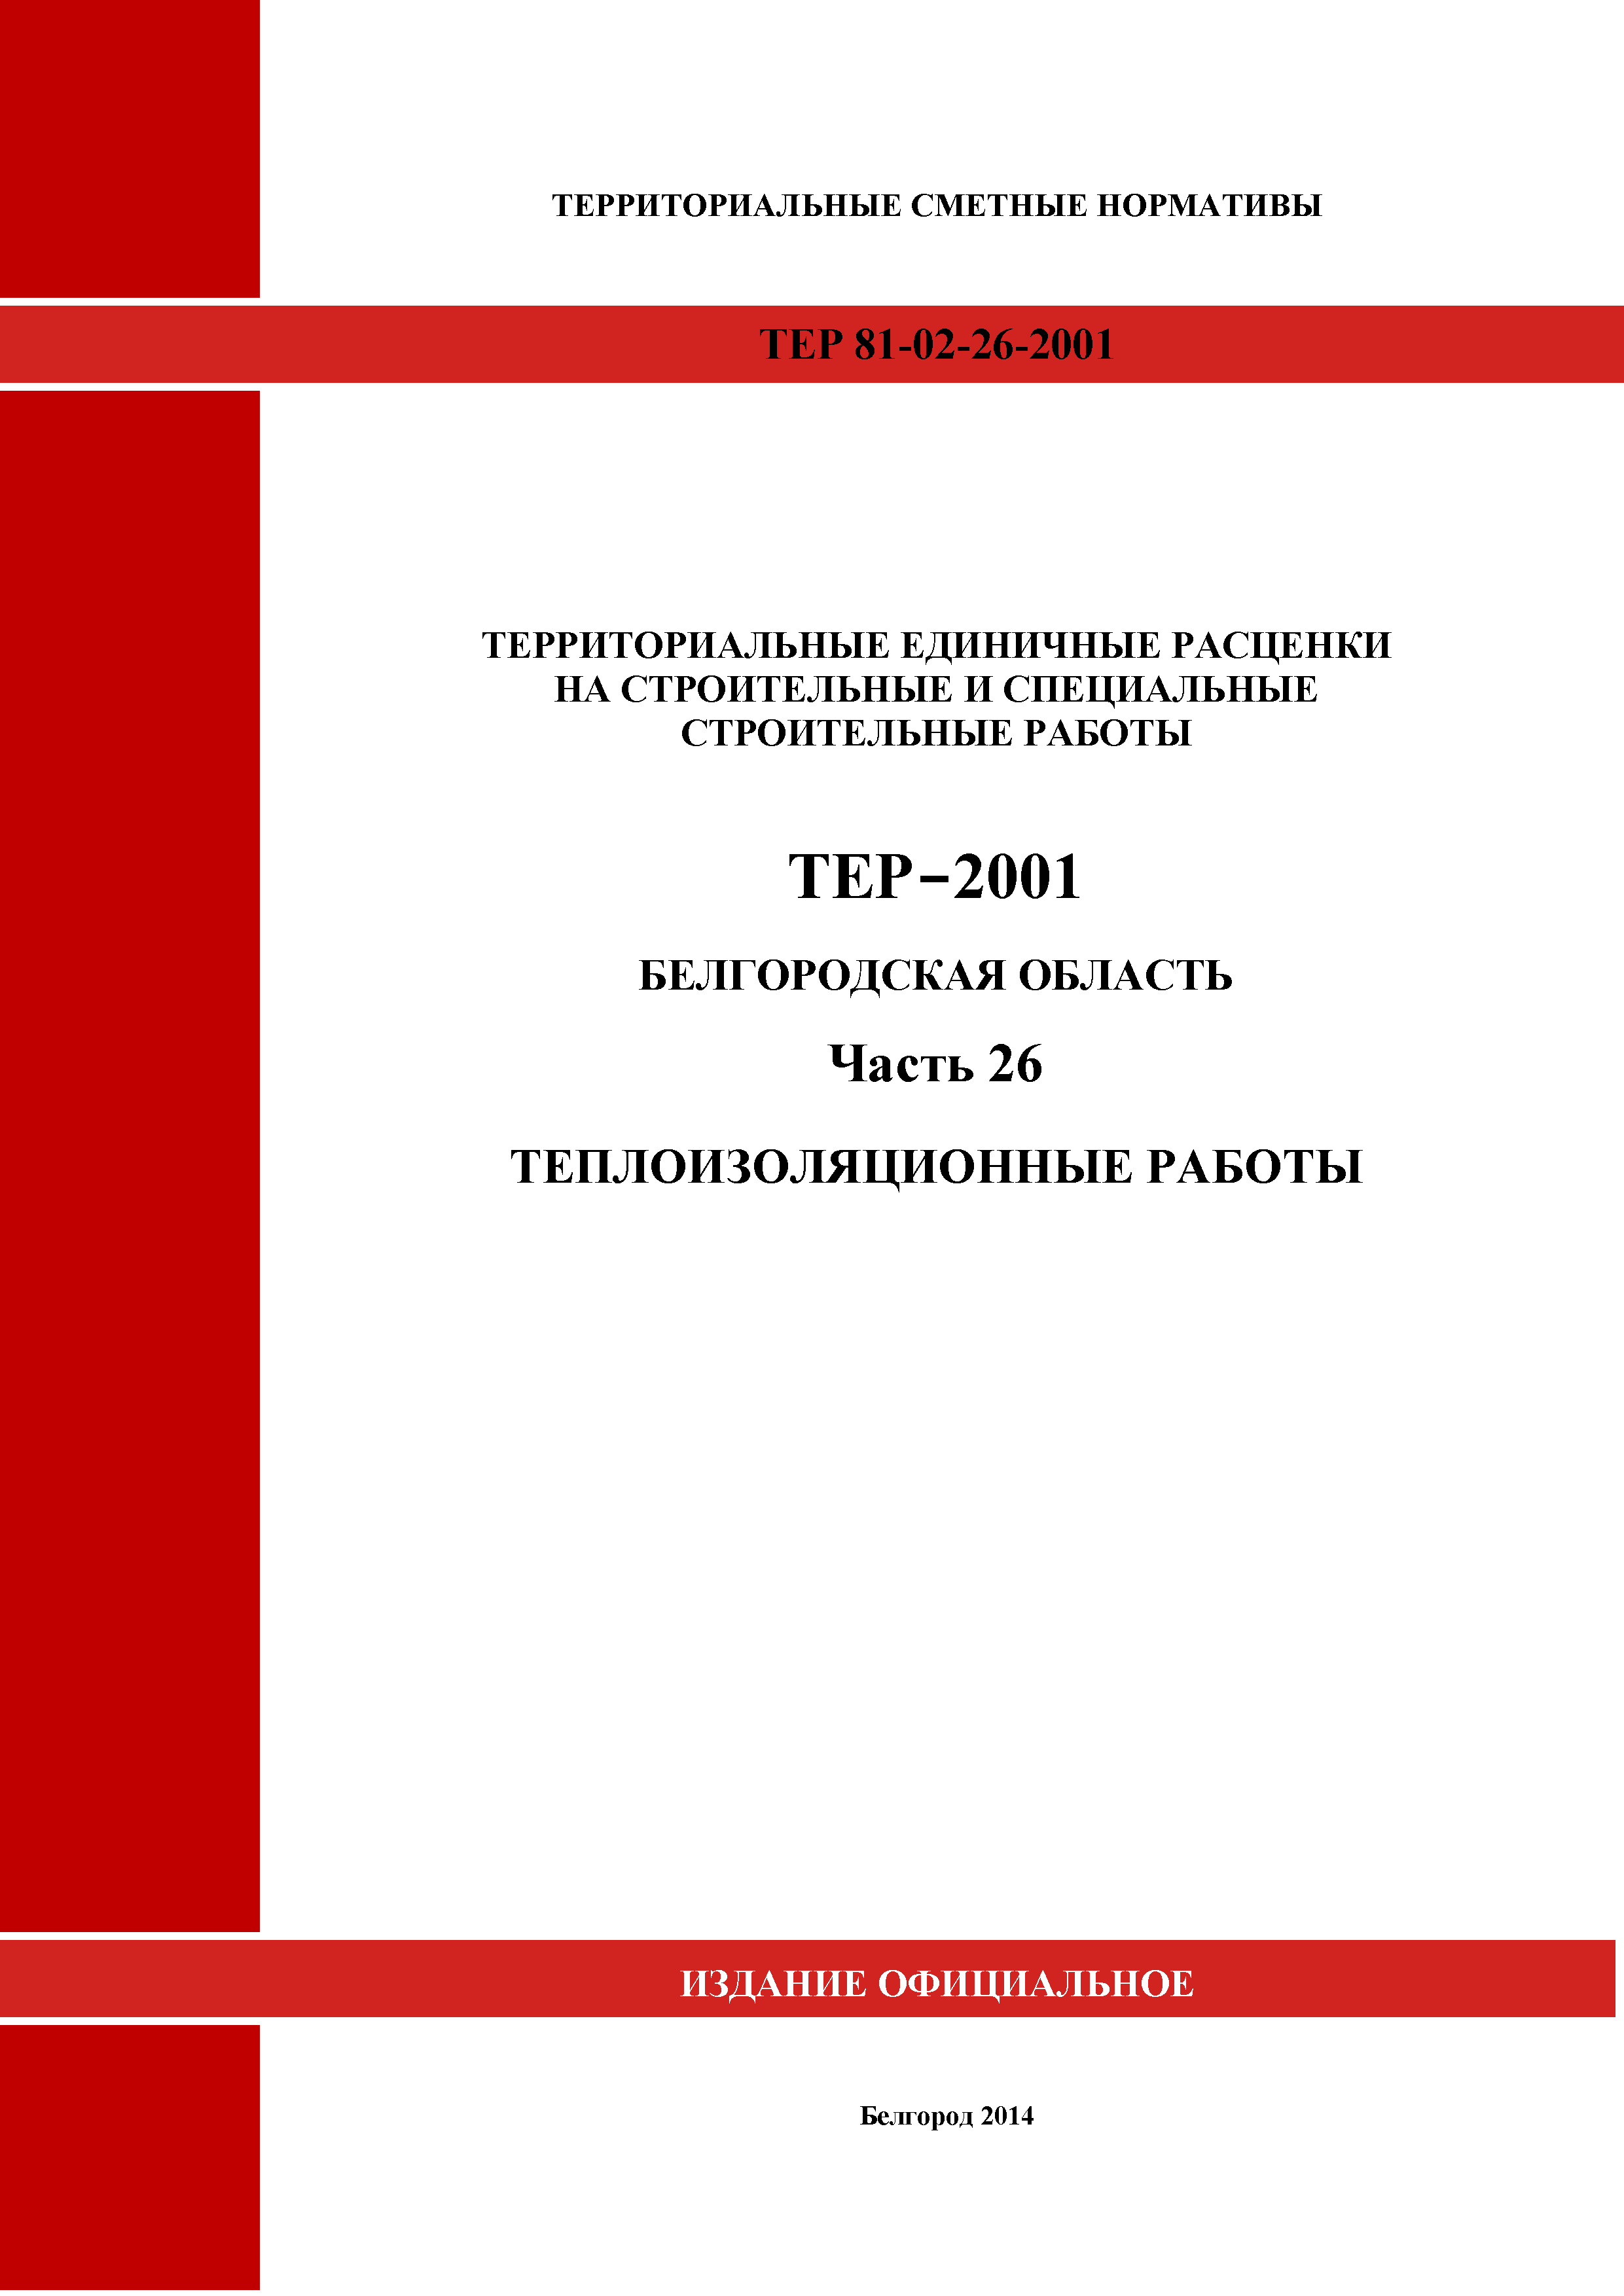 ТЕР Белгородская область 81-02-26-2001